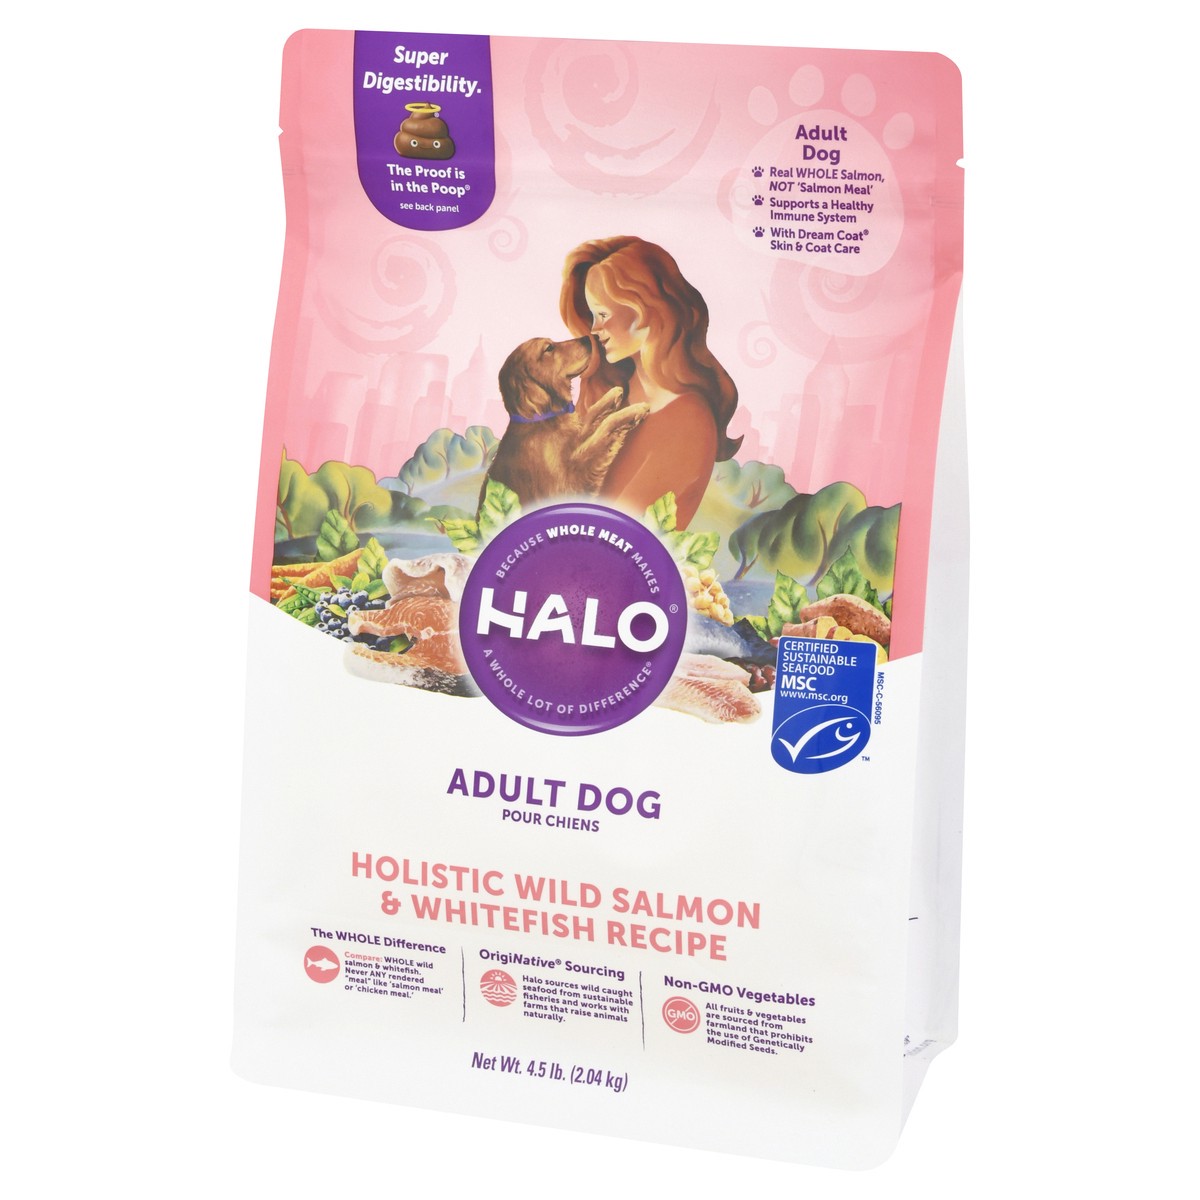 slide 7 of 10, Halo Adult Dog Holistic Wild Salmon & Whitefish Recipe Dog Food 4.5 lb, 4.5 lb